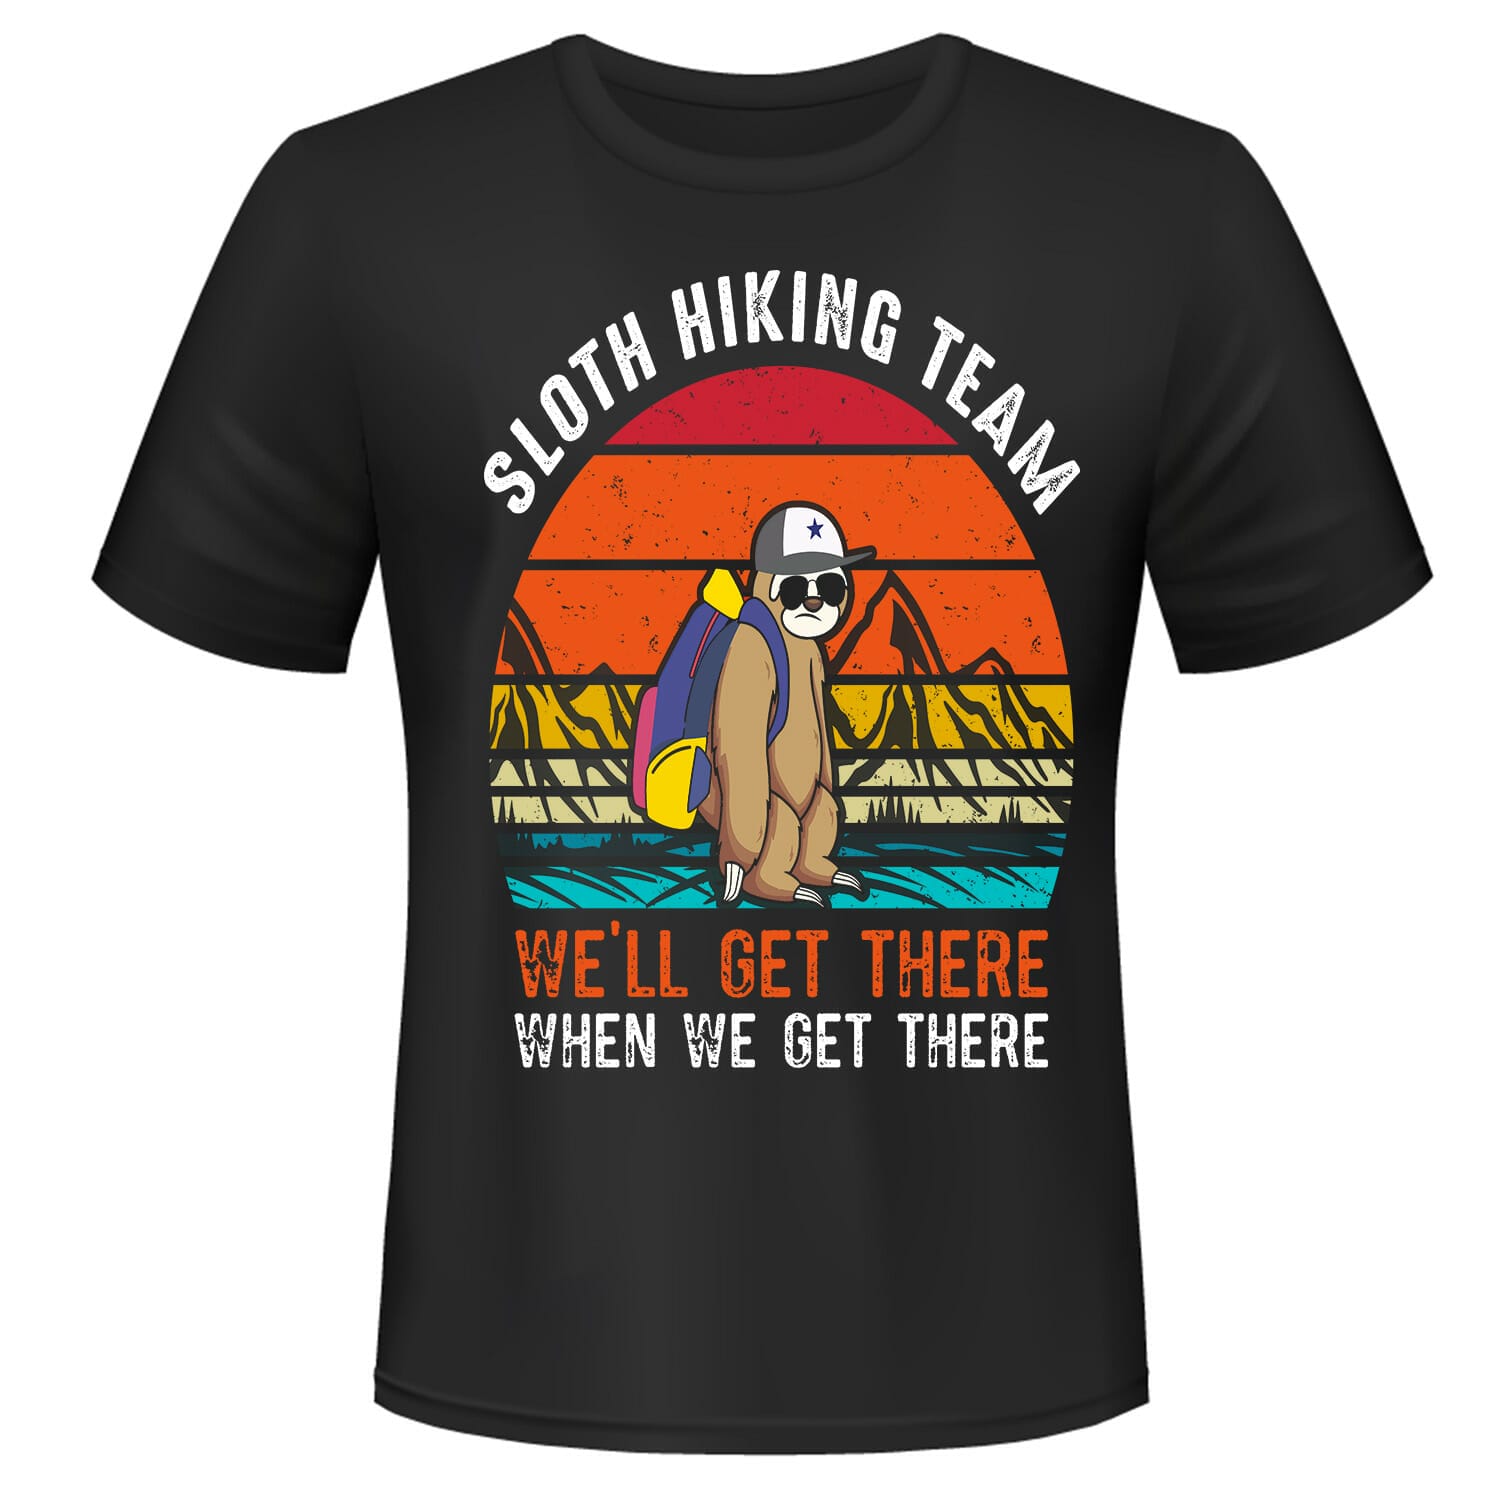 Sloth-hiking-team-Unisex-black-tshirt